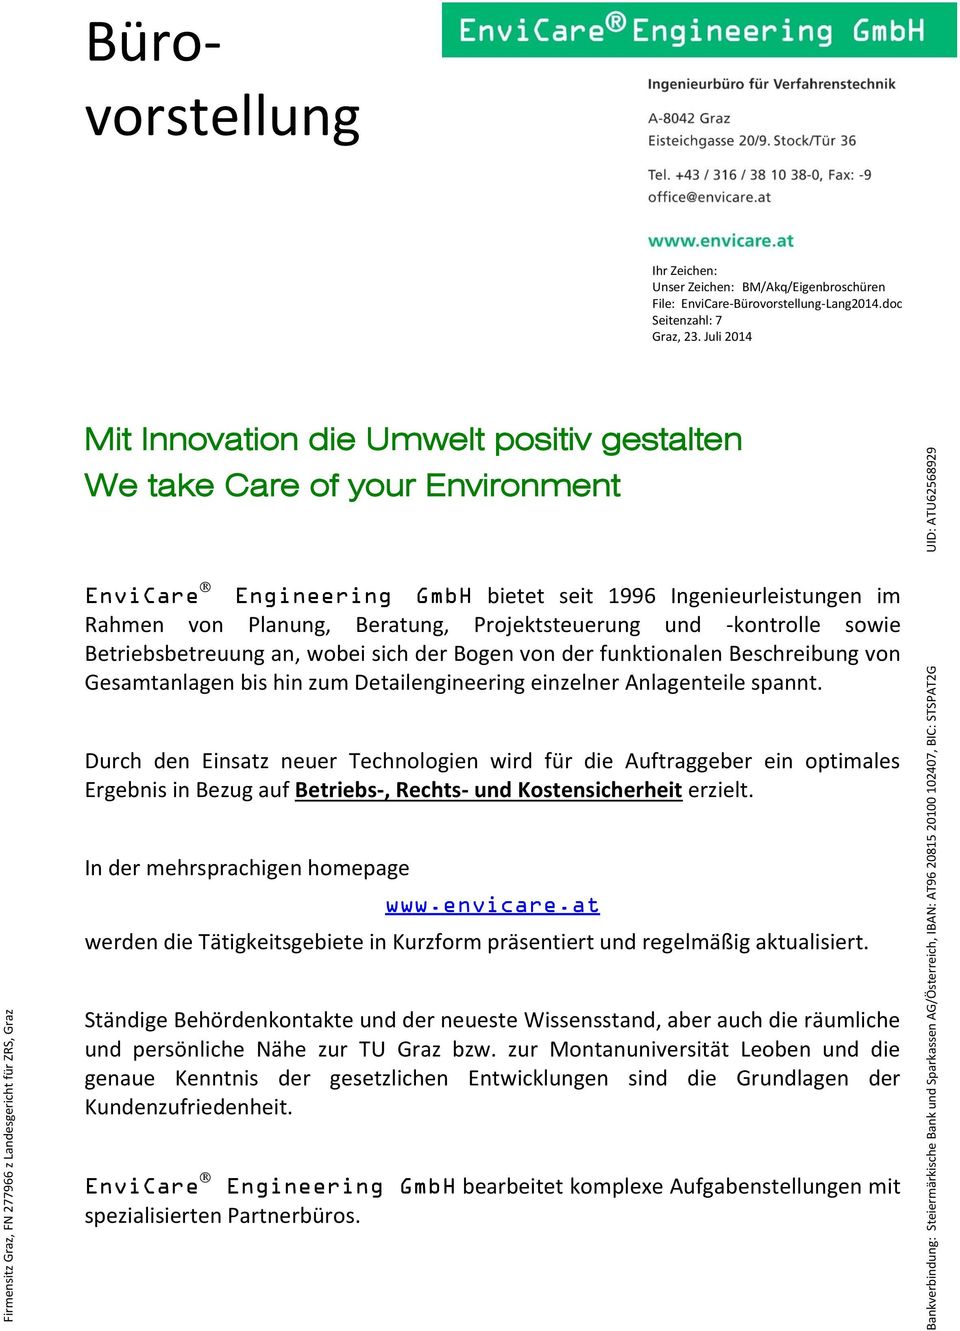 Juli 2014 Mit Innovation die Umwelt positiv gestalten We take Care of your Environment EnviCare Engineering GmbH bietet seit 1996 Ingenieurleistungen im Rahmen von Planung, Beratung, Projektsteuerung